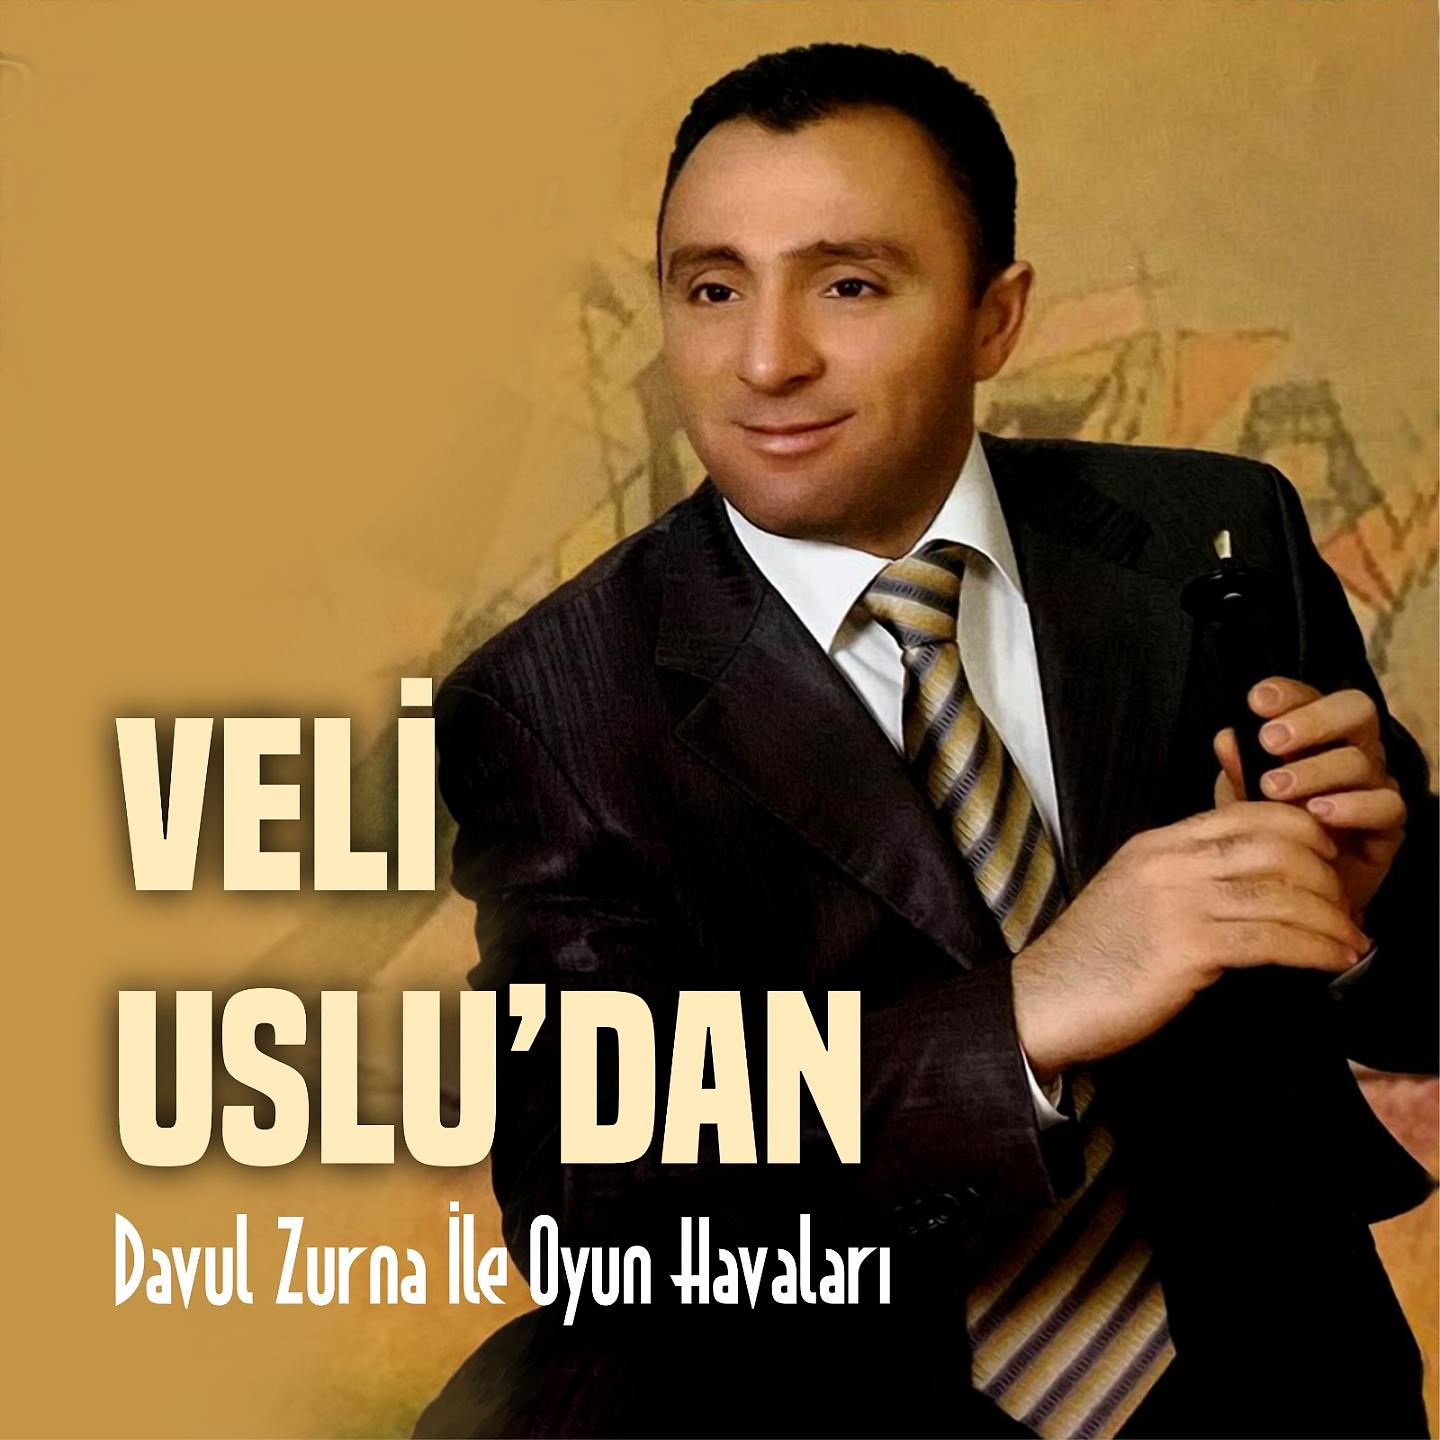 Постер альбома Davul Zurna İle Oyun Havaları